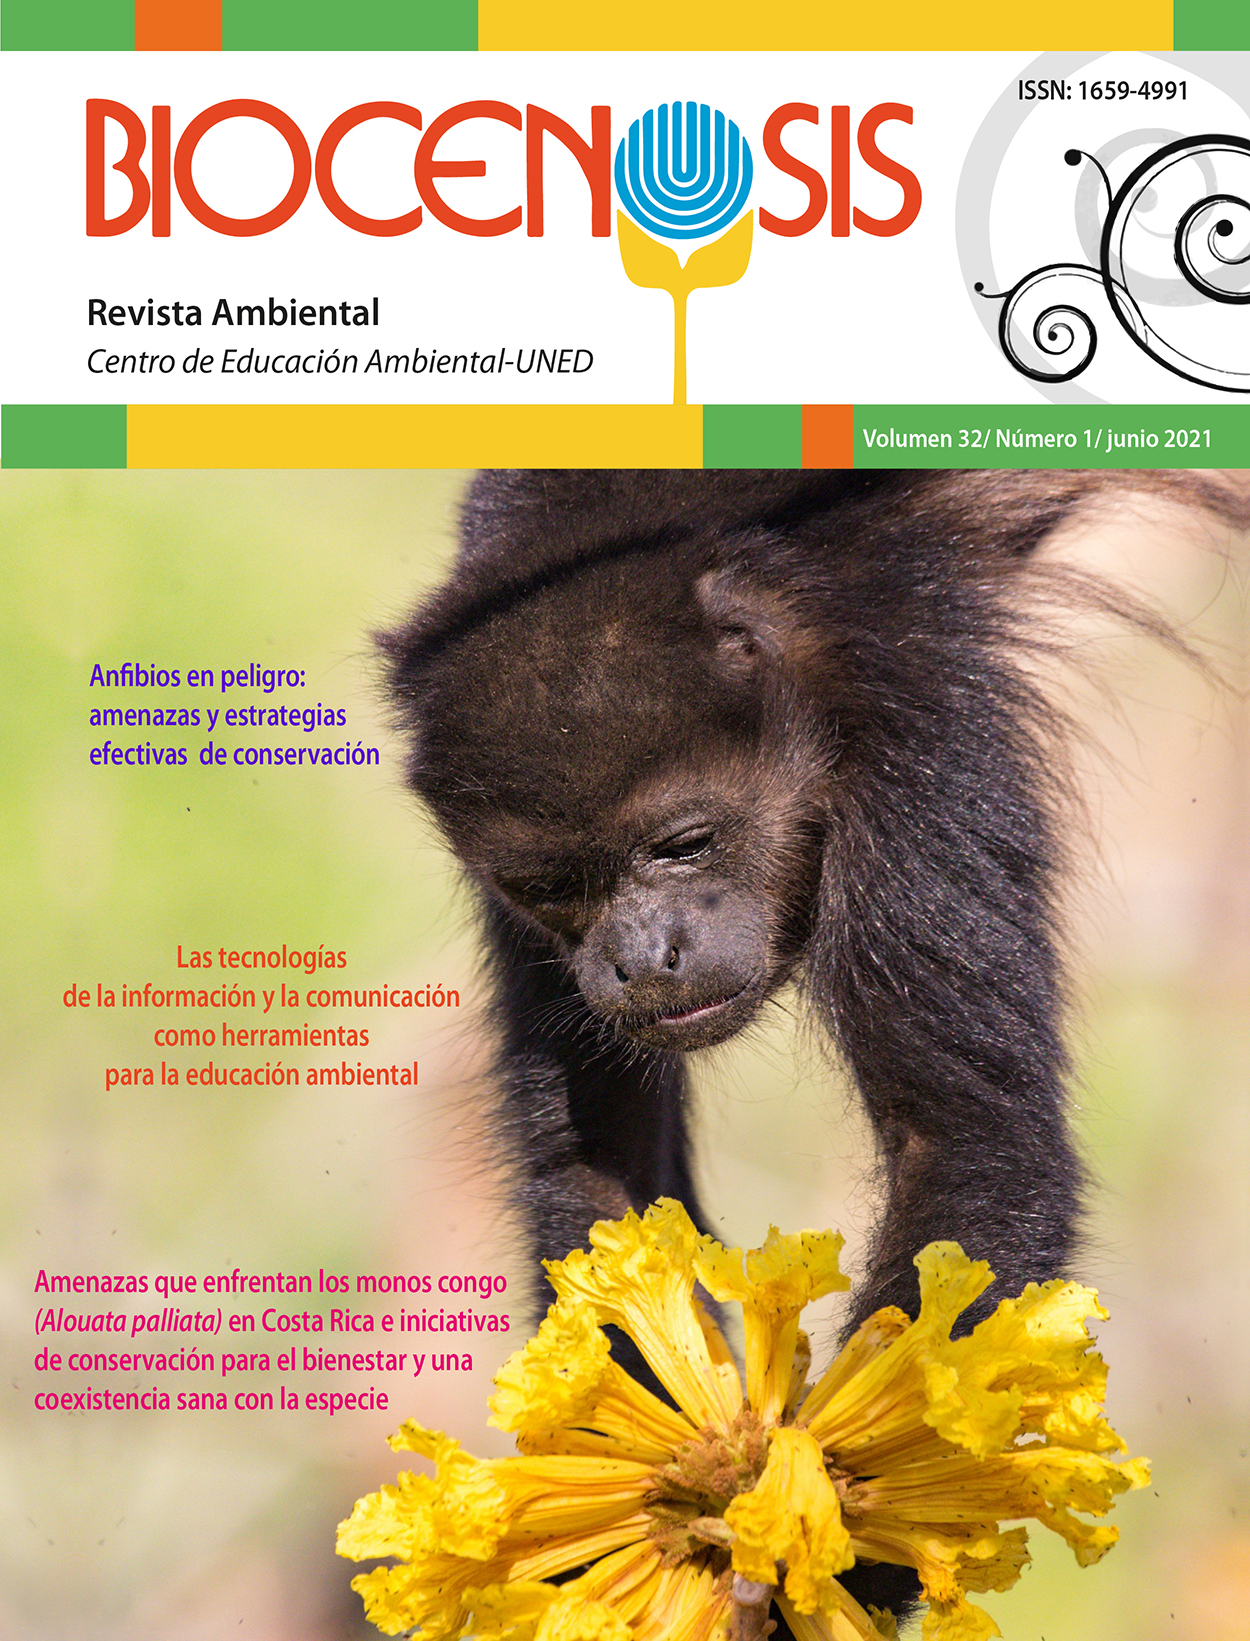 El volumen 32 (1) de la Revista Biocenosis refleja la interdisciplinariedad que complementa el quehacer de la educación ambiental y su evolución a través de los años, disciplina clave y pilar para el mantenimiento del entorno y la convivencia sana con las especies con las que compartimos el planeta.